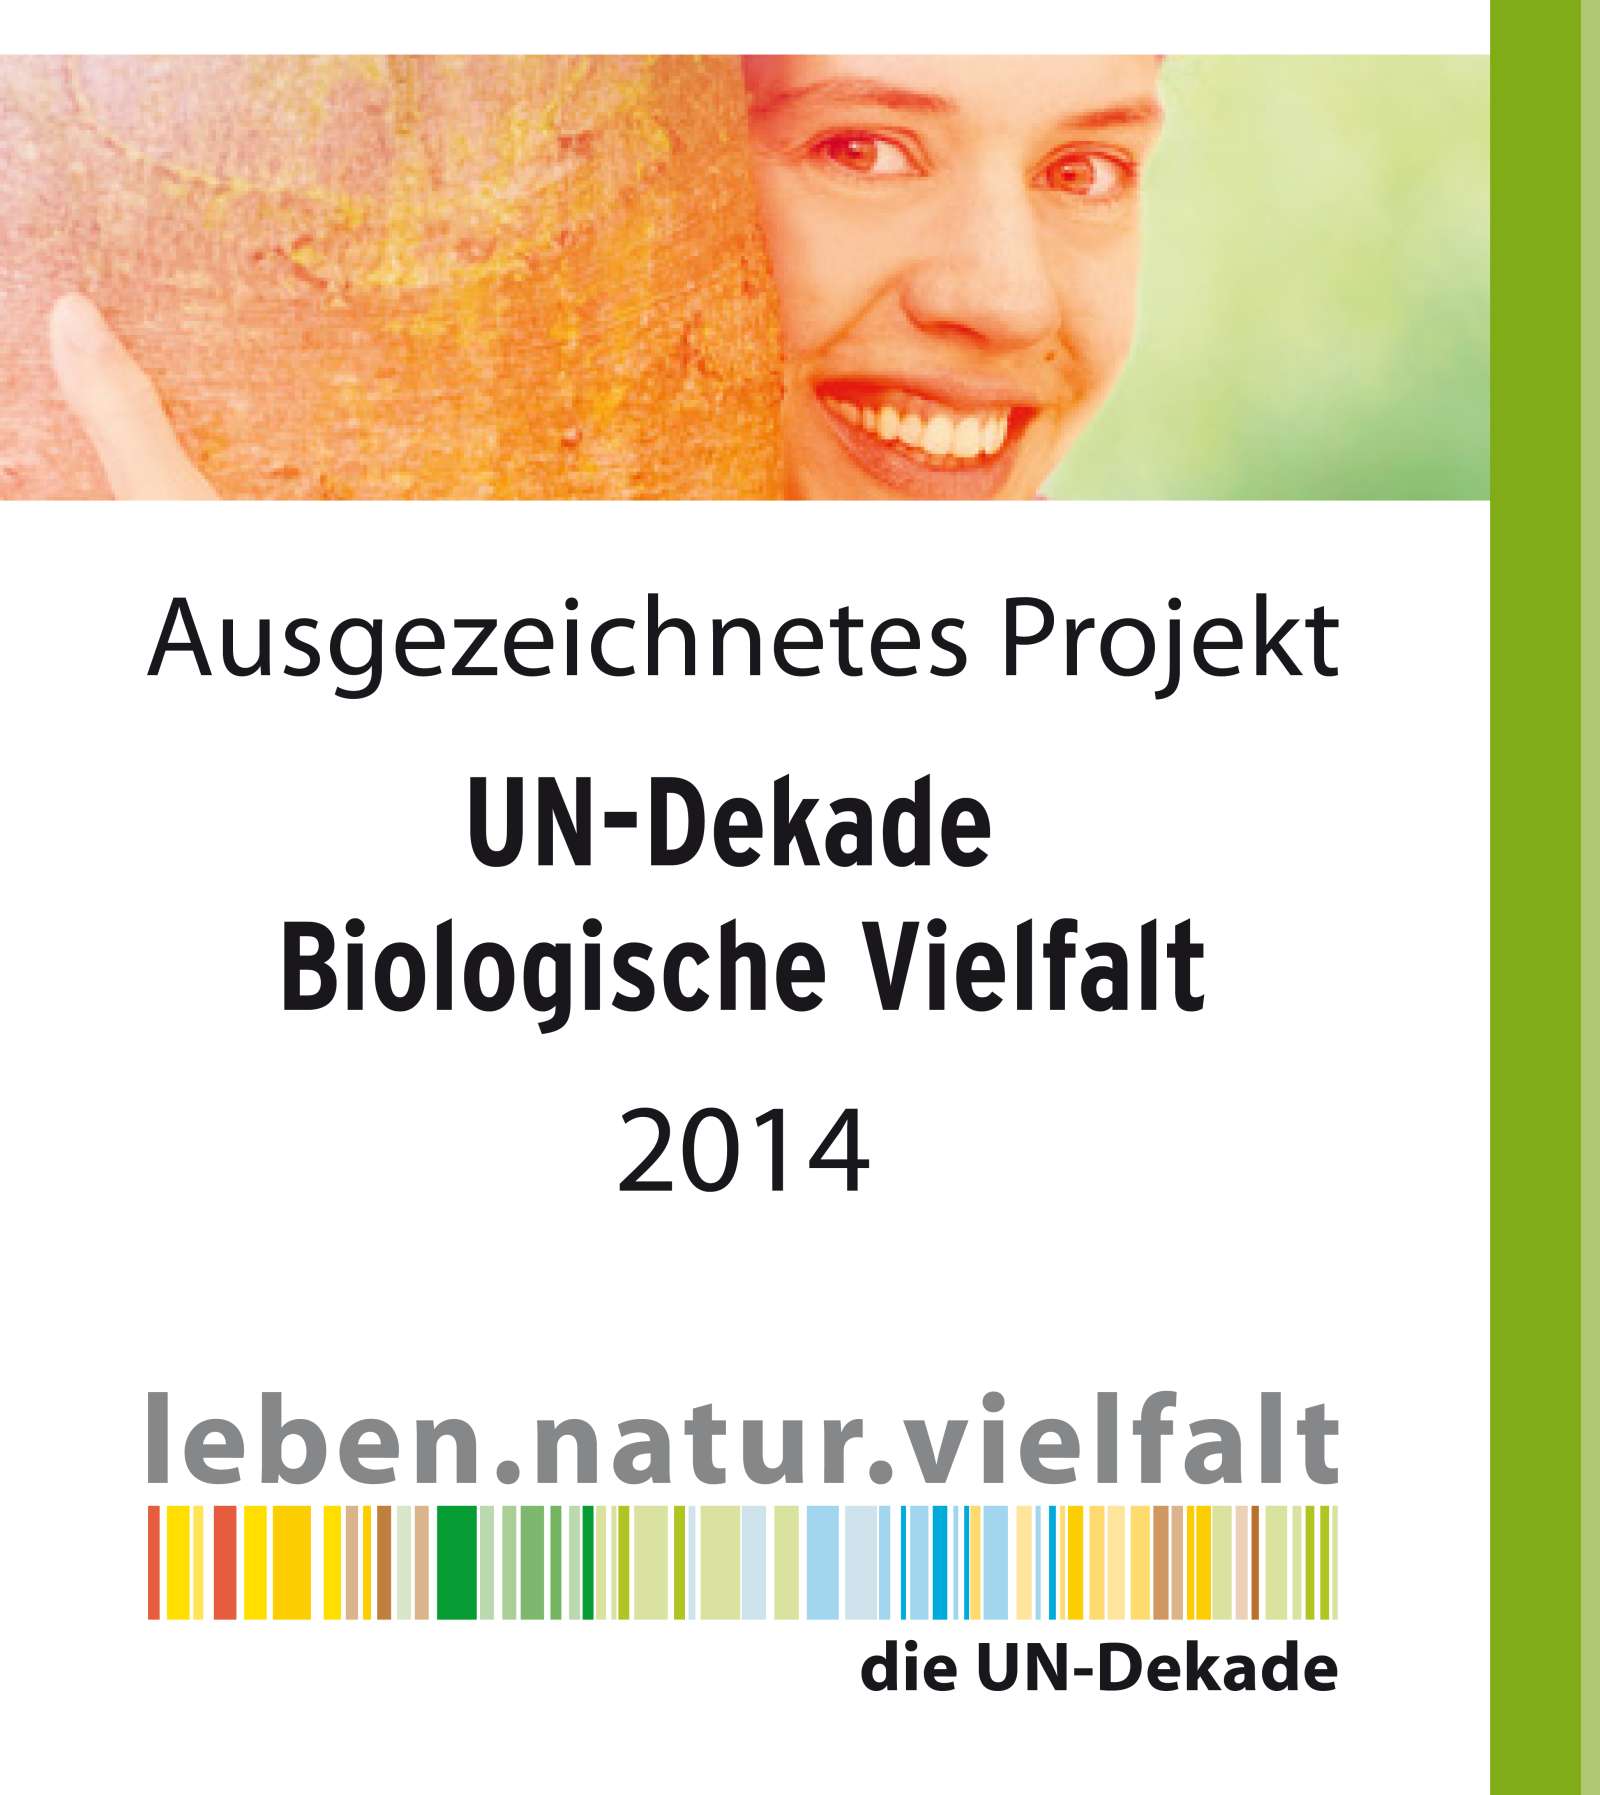 UN-Banner Bilogische Vielfalt